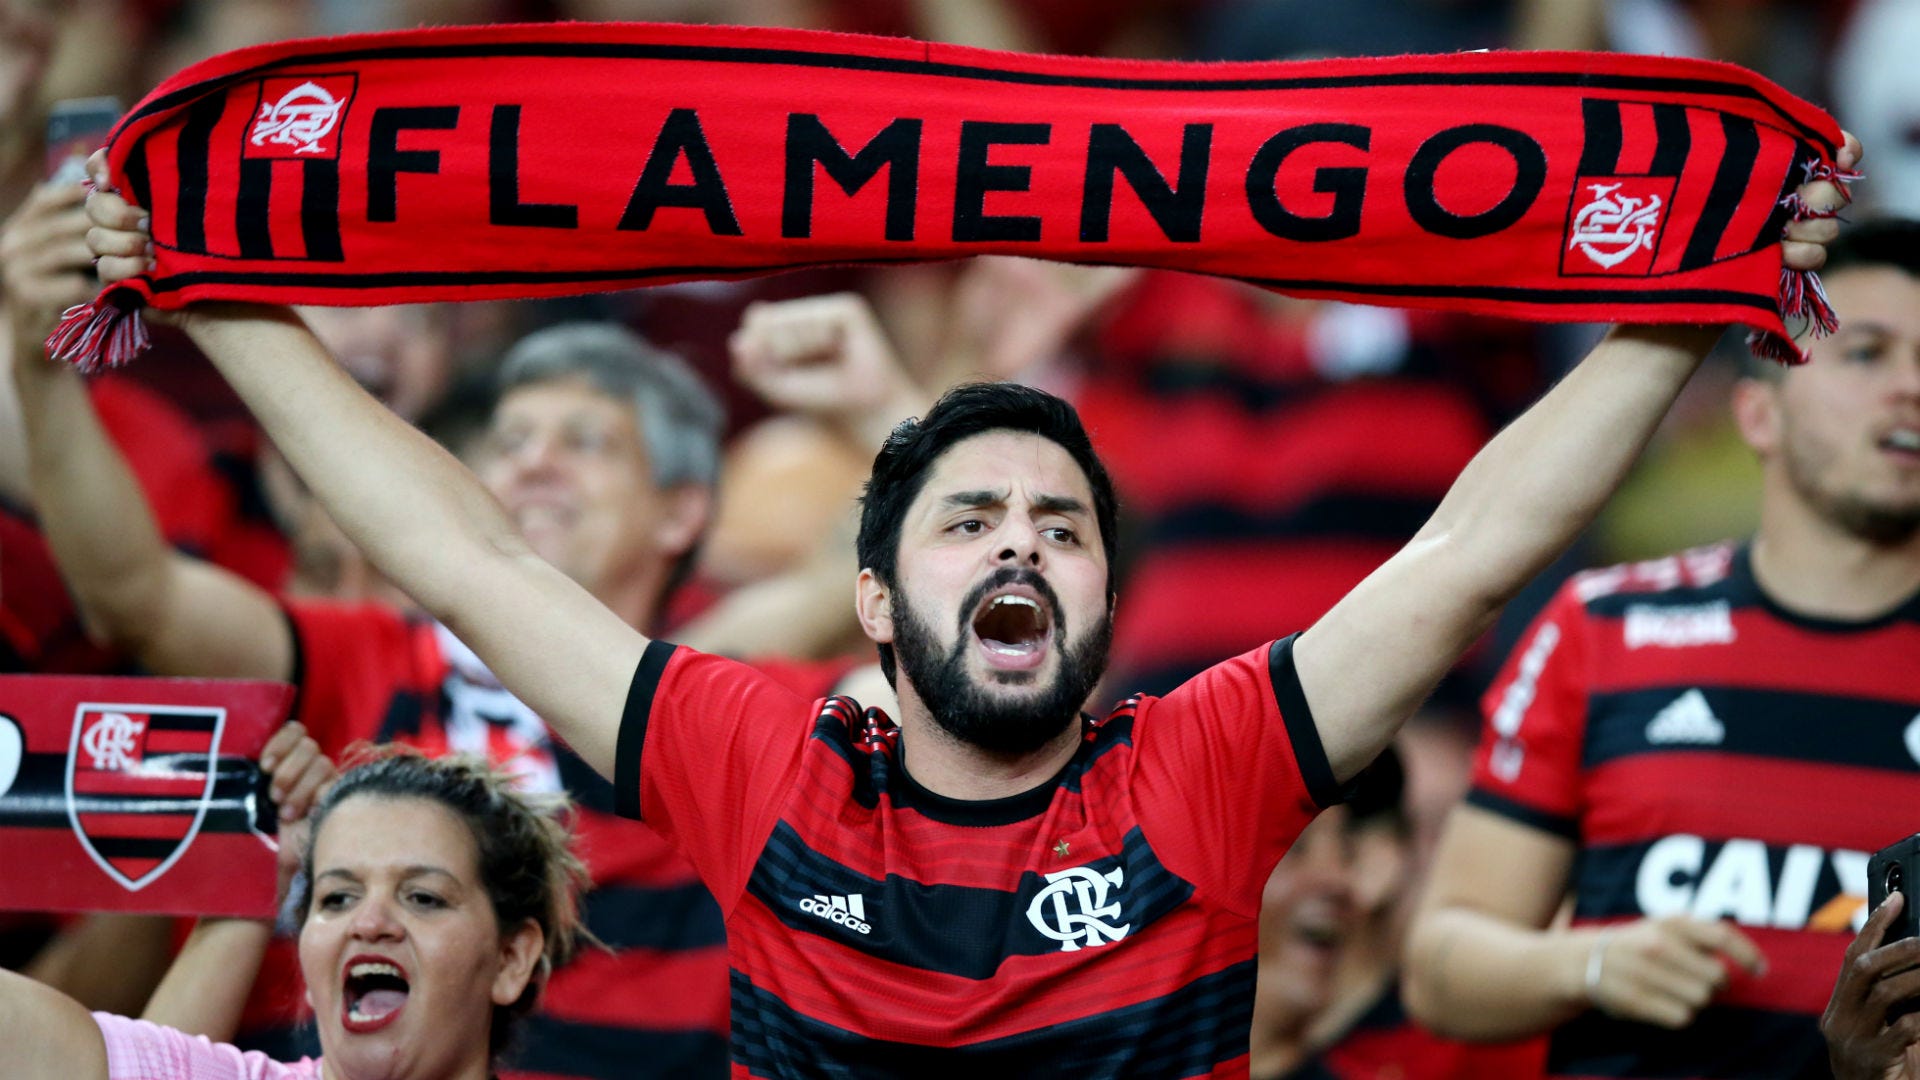 Flamengo torcida 27 10 2019